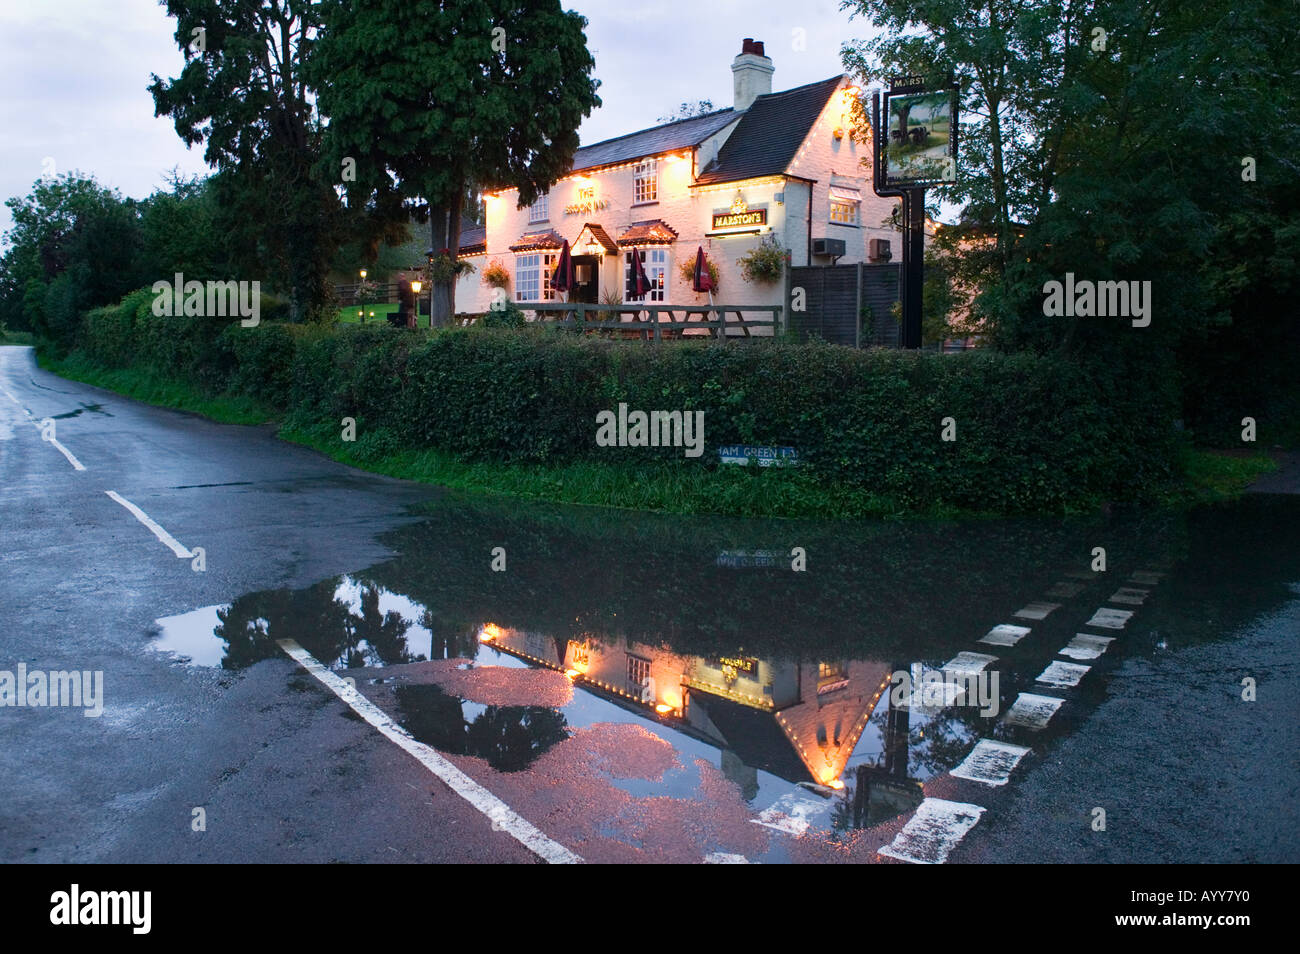 Le Brook Inn reflète dans une flaque d'eau sur la route près de Feckenham UK Worcestershire Banque D'Images